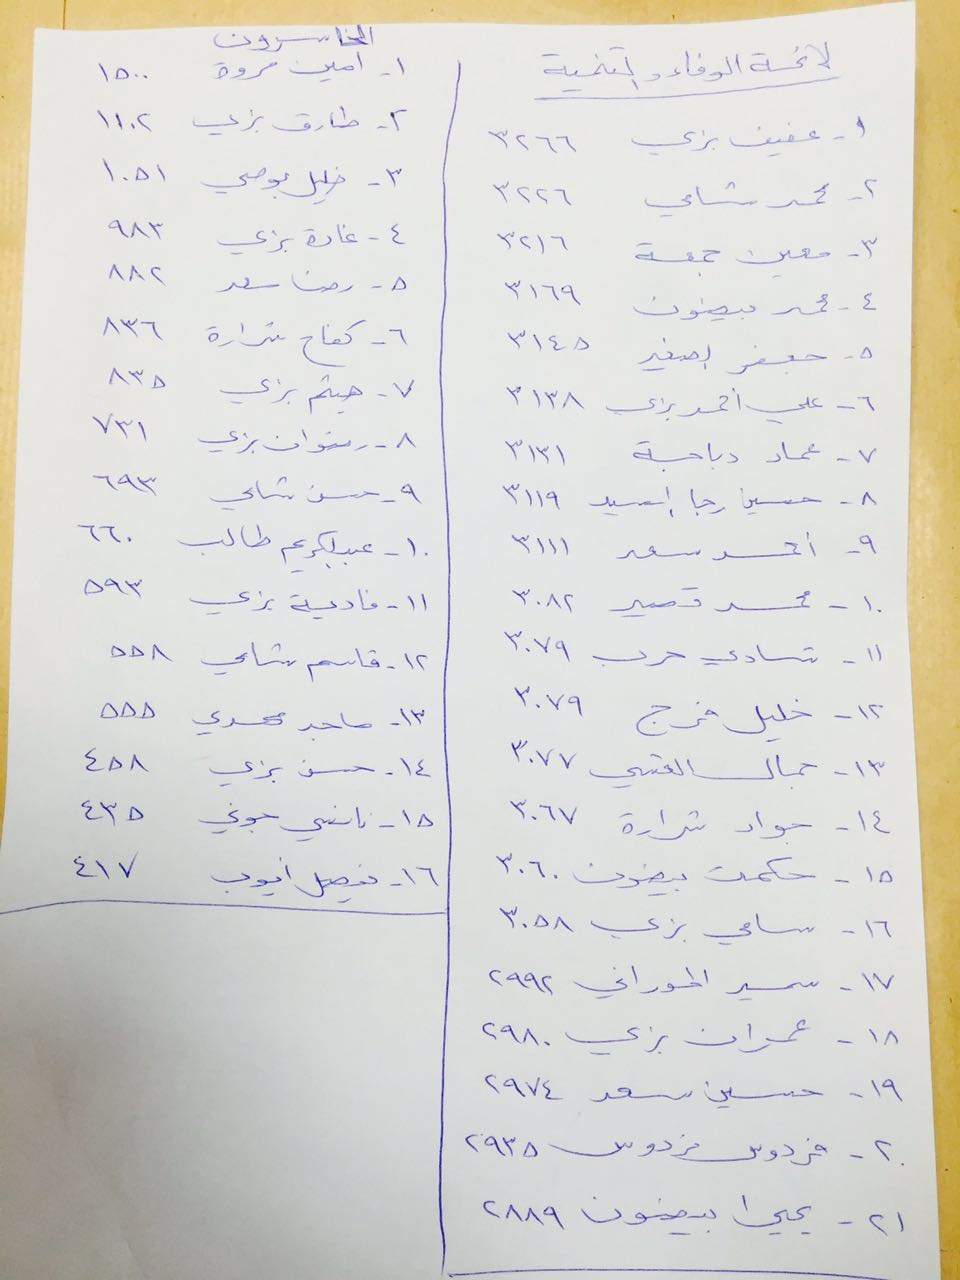 بالصورة / هذه هي نتائج الانتخابات البلدية في مدينة بنت جبيل 